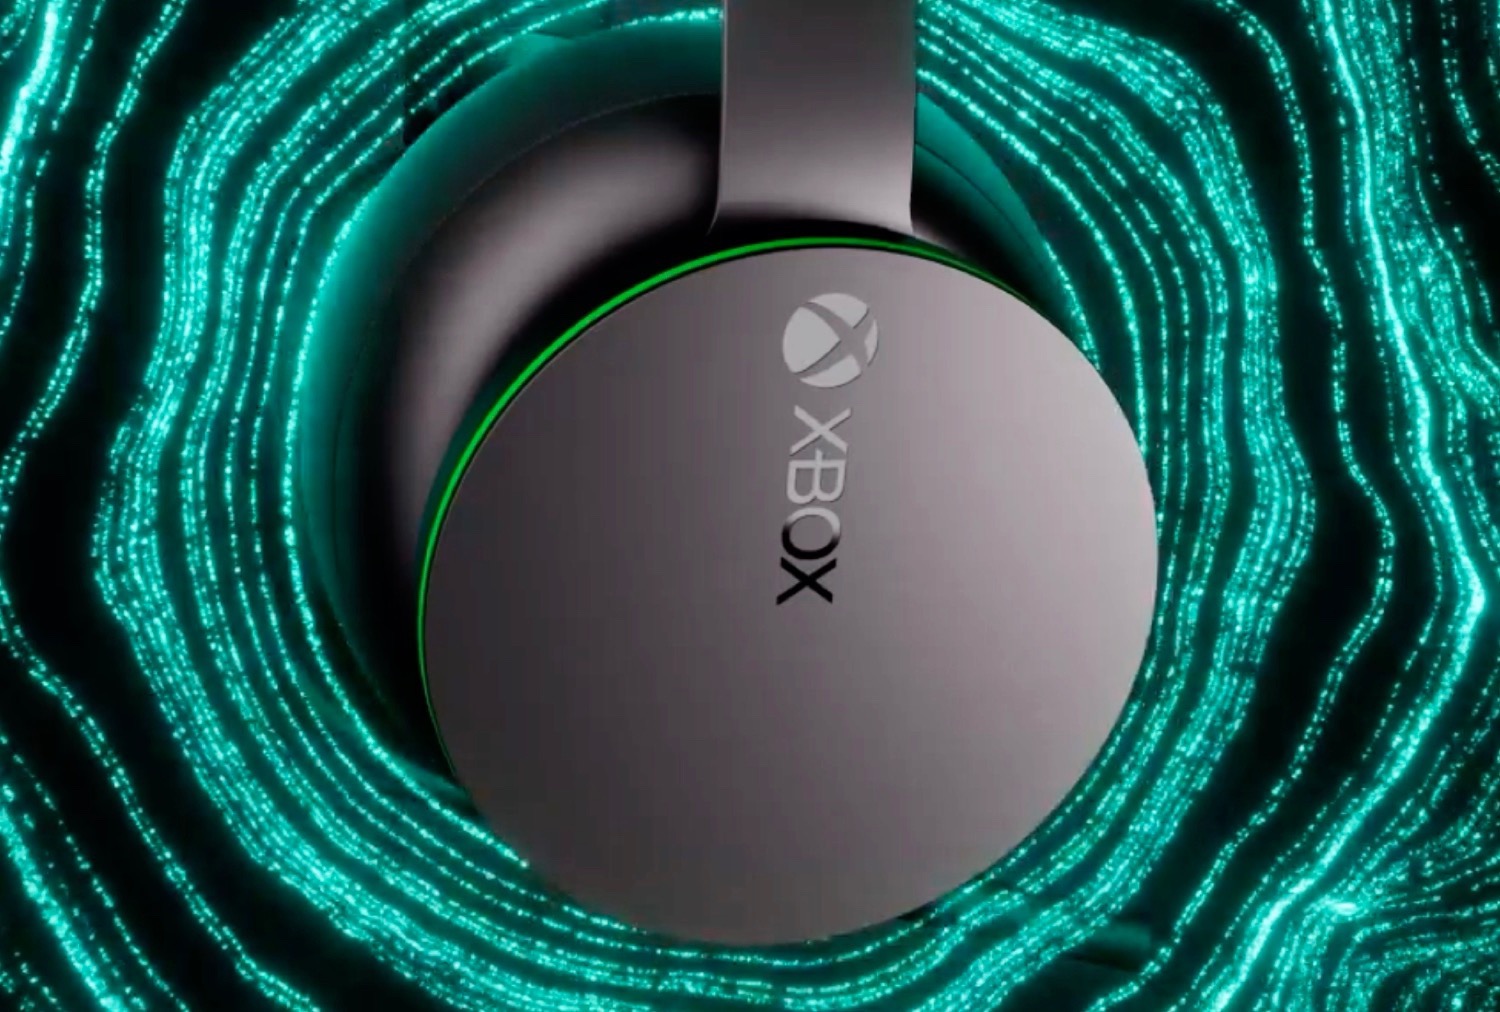 Das brandneue Microsoft Xbox Wireless Notebookcheck.com minimale und - News Sound verspricht erstklassigen Latenz Headset